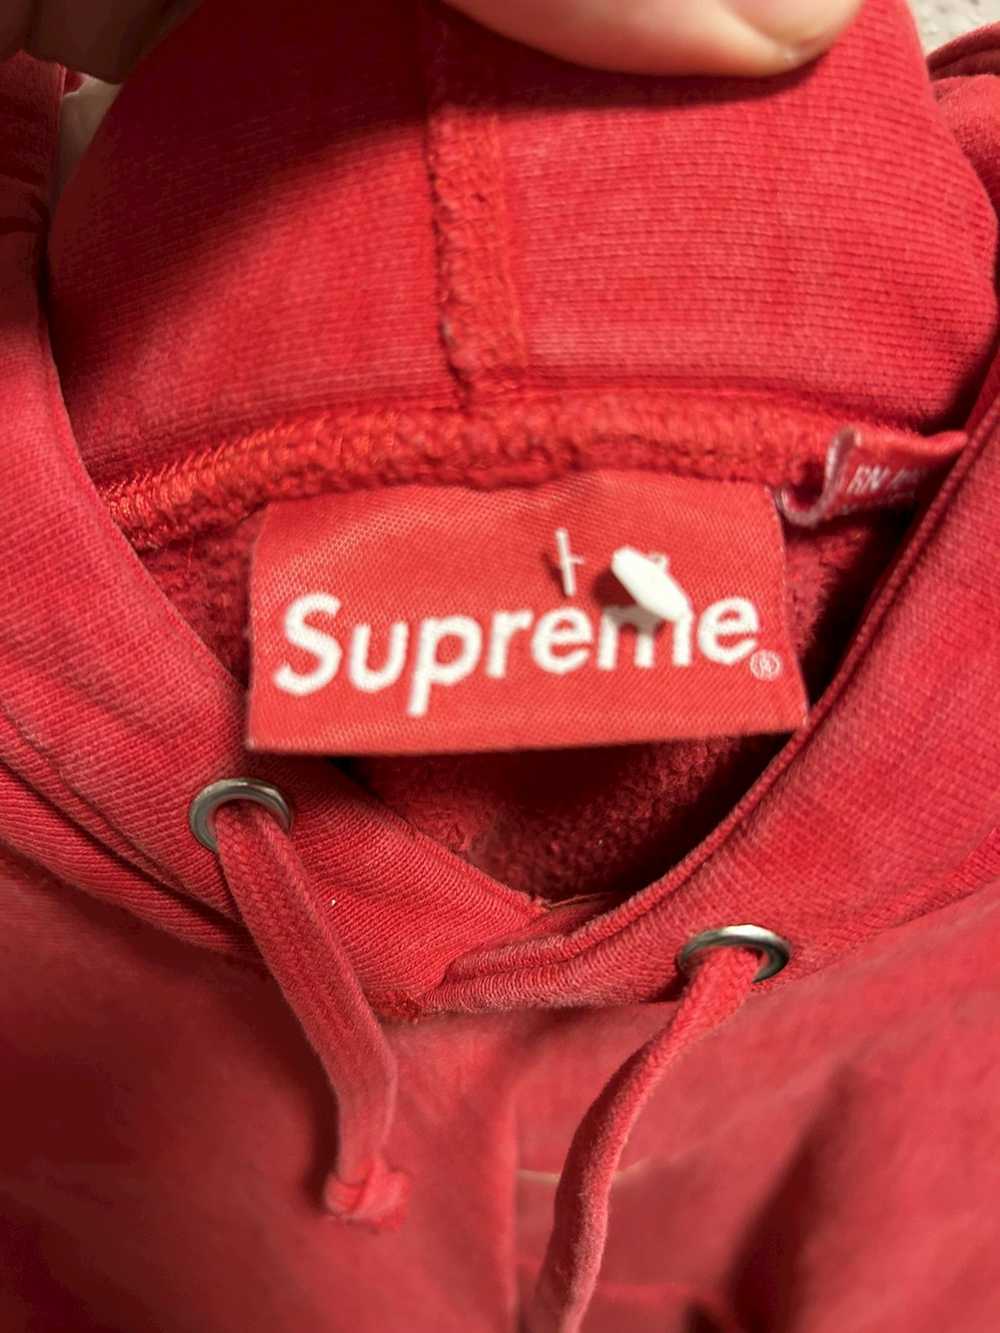 Supreme Supreme hoodie - image 5